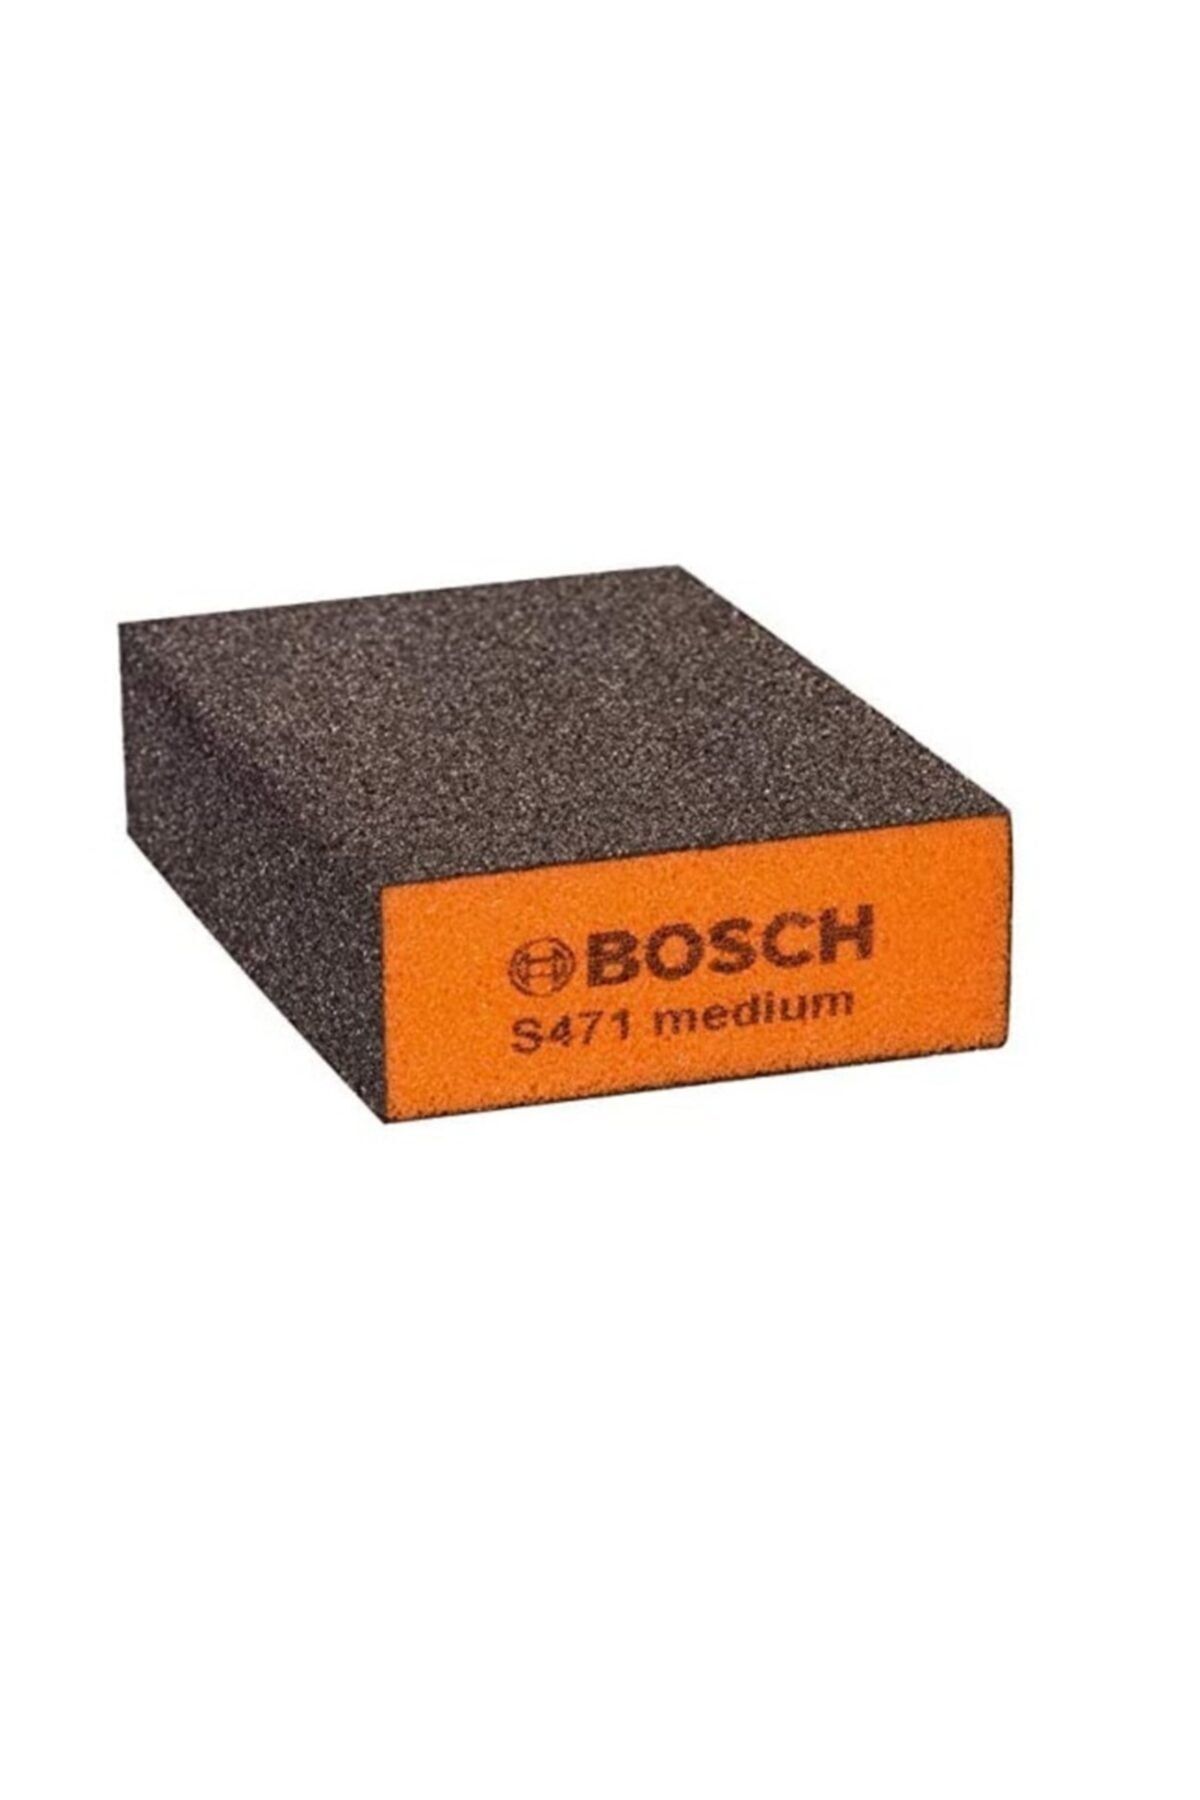 Bosch S471 Dört Taraflı Sünger Zımpara 60 Kum